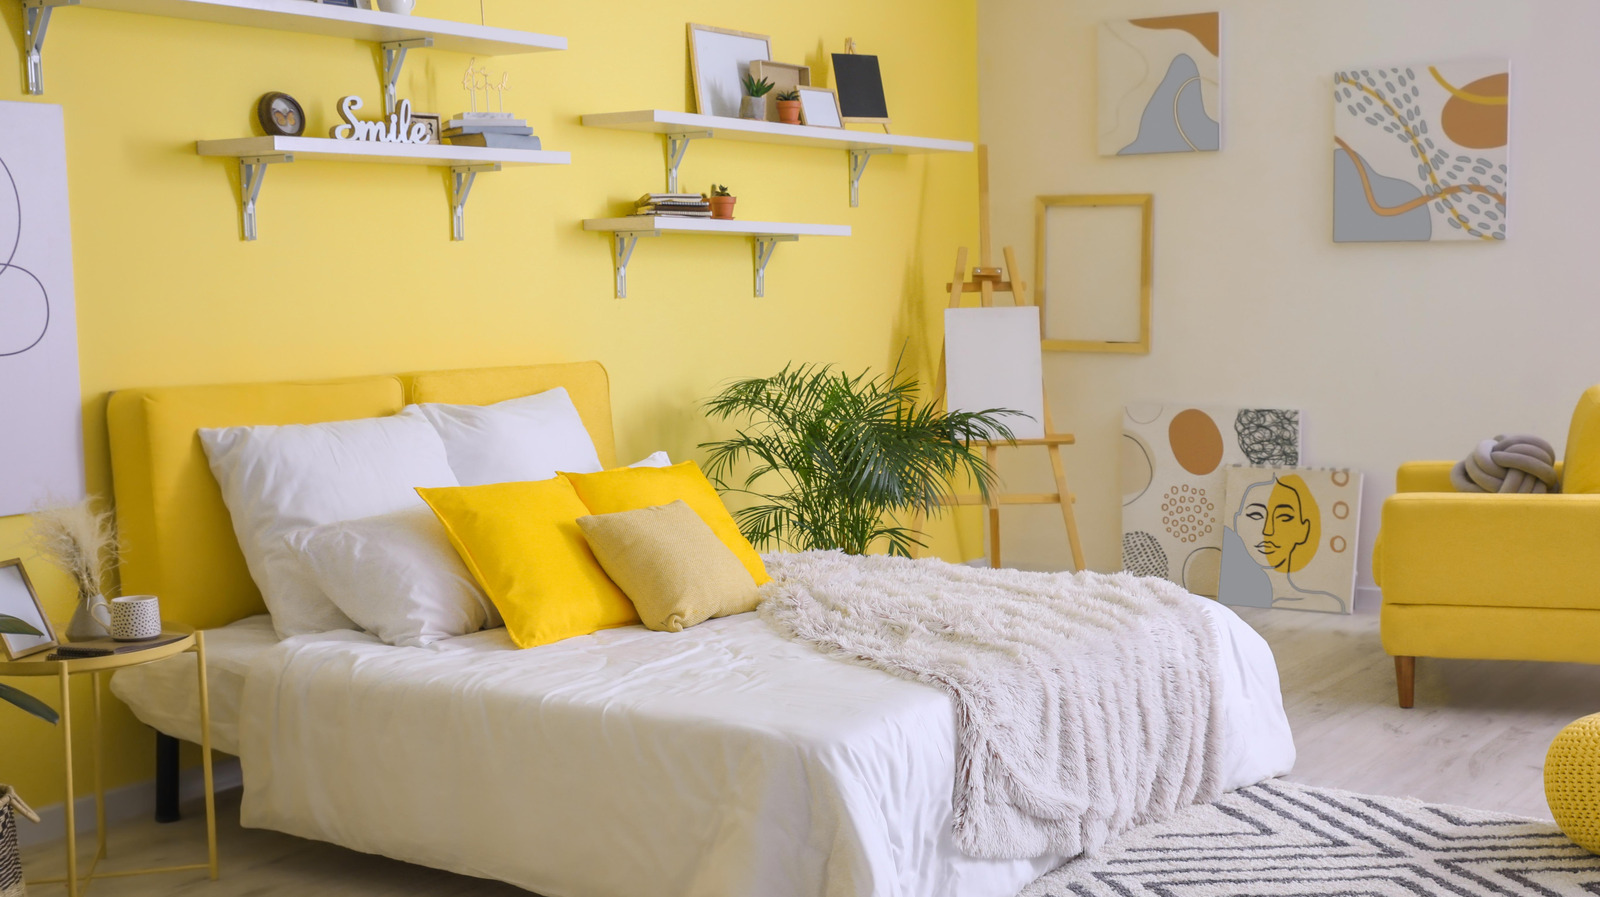 yellow statement bedroom - yellow bedroom ideas